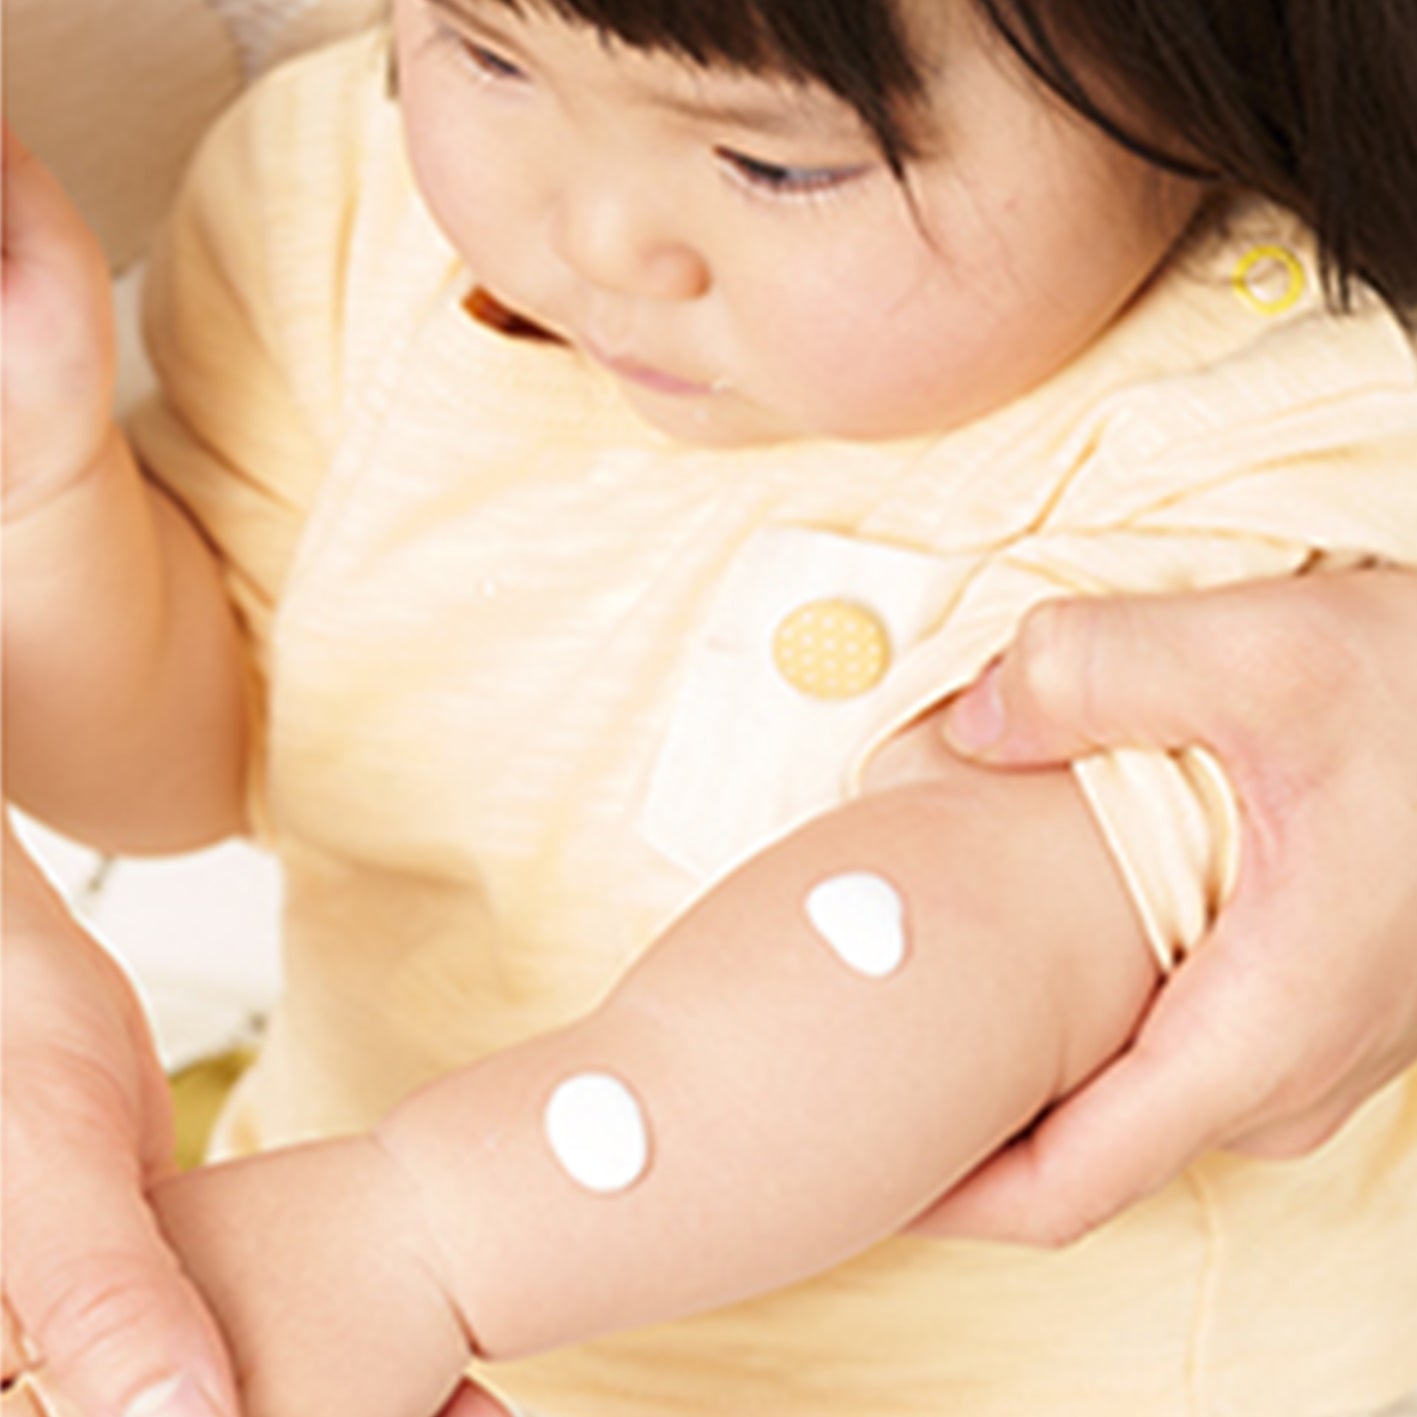 【Mama&kid】嬰兒孕婦專用防曬乳液系列